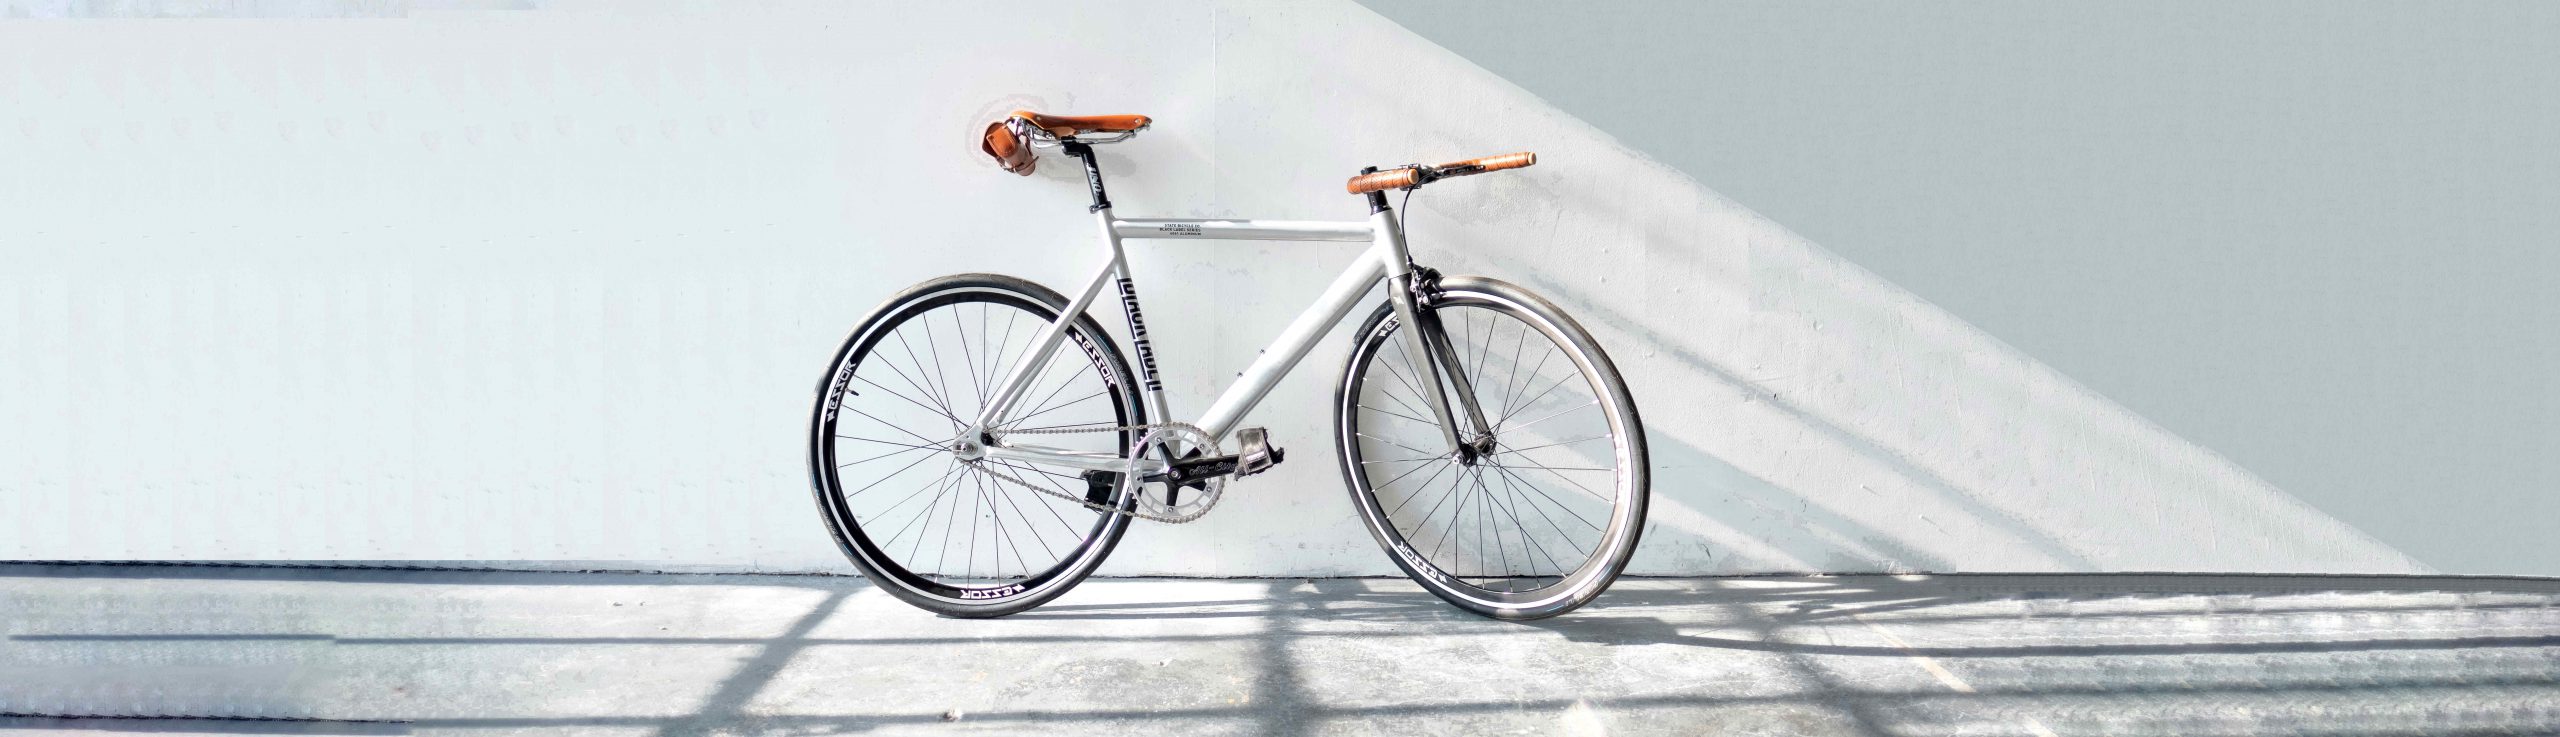 vélo blanc avec accessoires marron posé contre un mur blanc